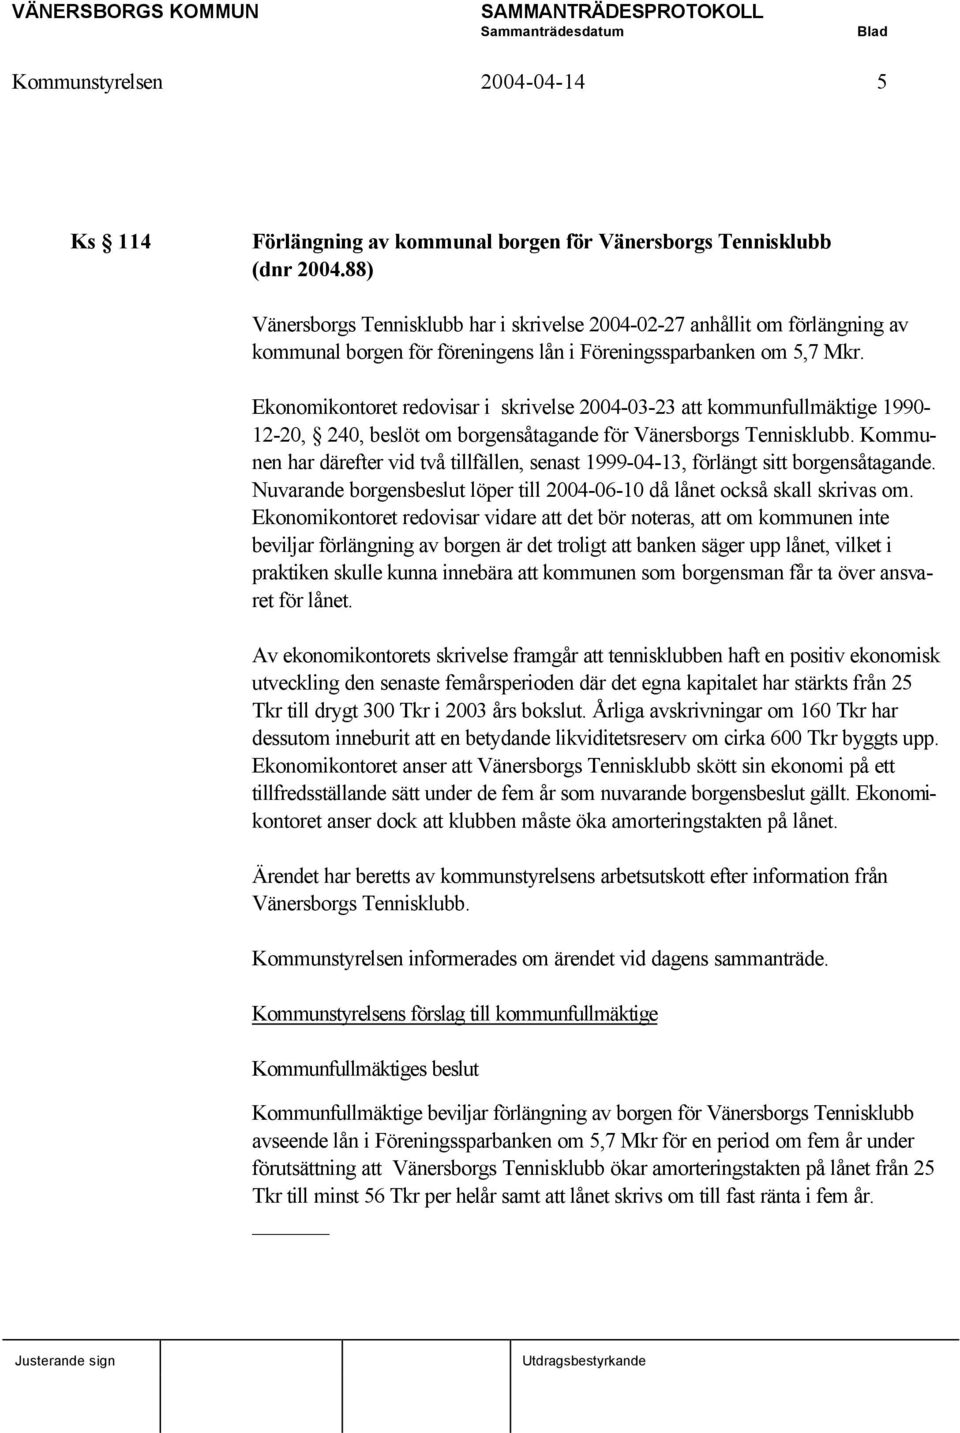 Ekonomikontoret redovisar i skrivelse 2004-03-23 att kommunfullmäktige 1990-12-20, 240, beslöt om borgensåtagande för Vänersborgs Tennisklubb.